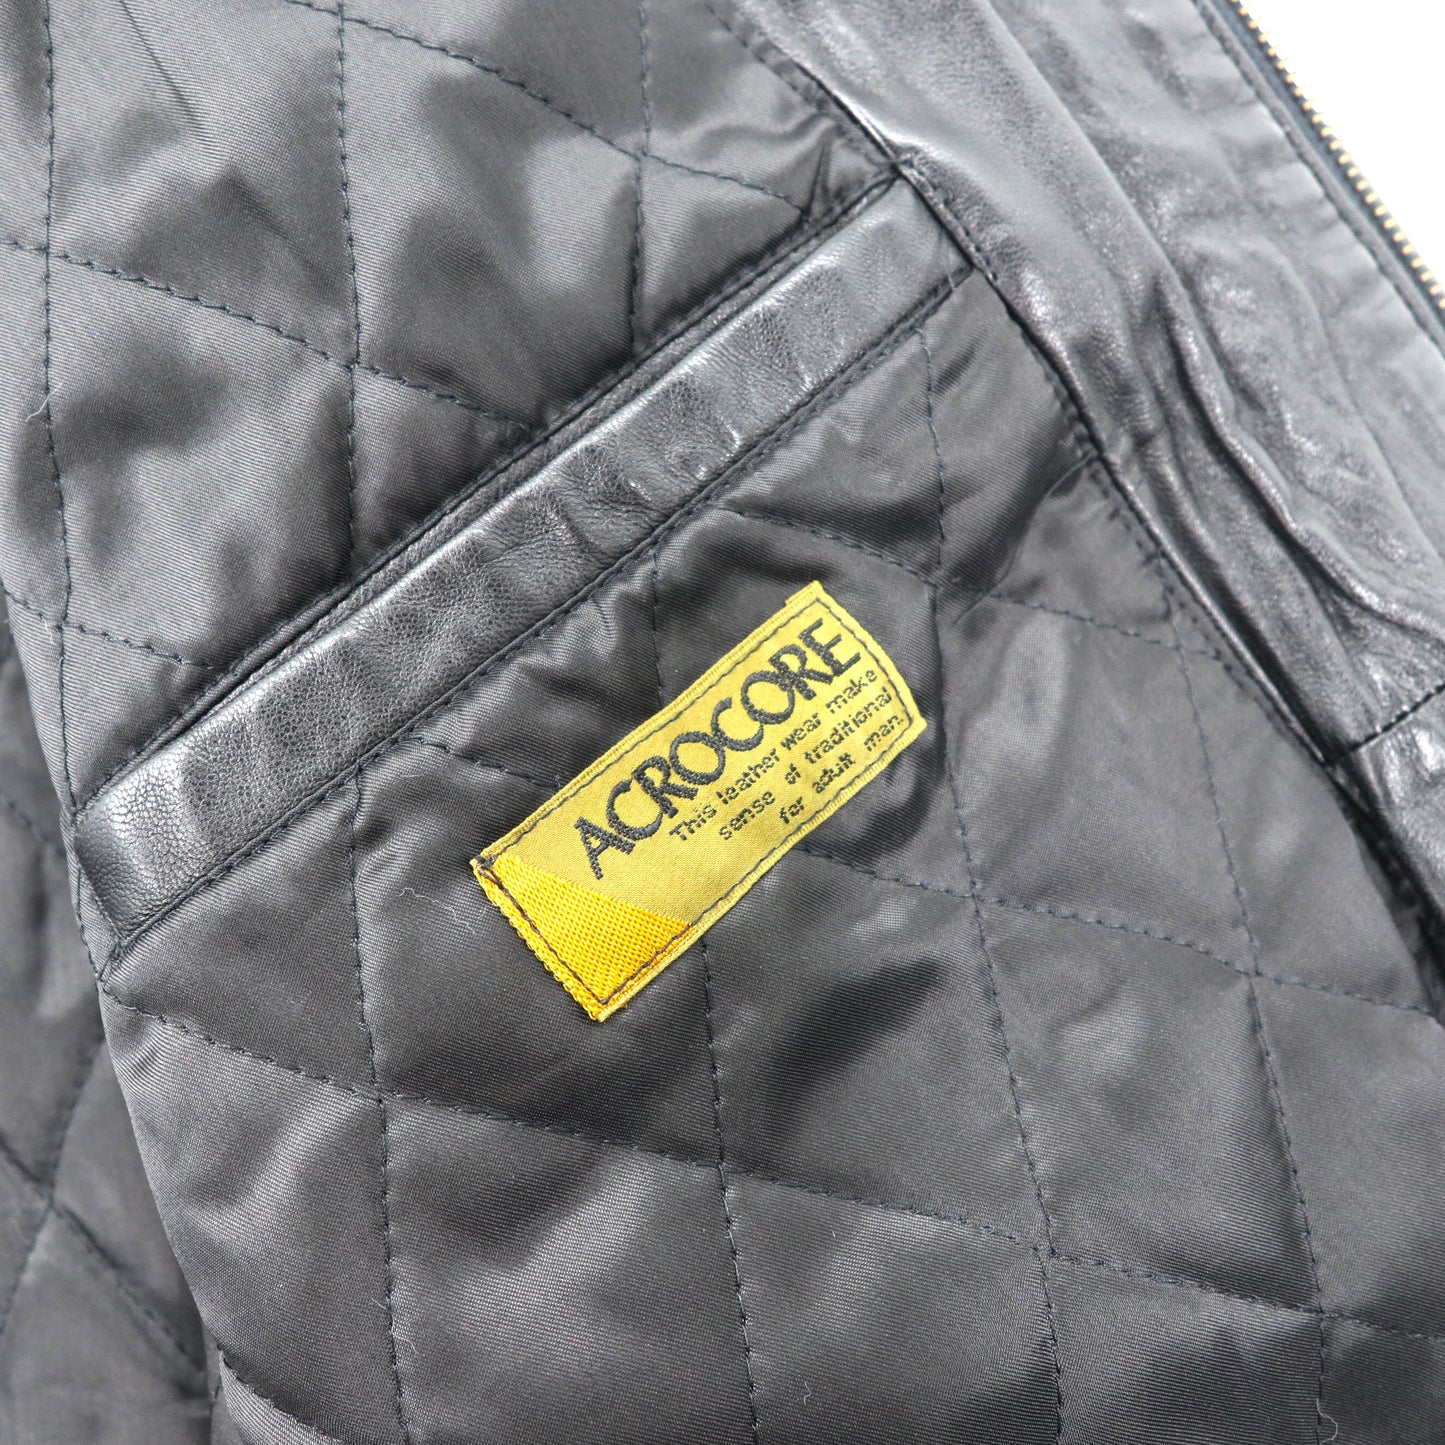 ACROCORE レザーボンバージャケット M ブラック 羊革 ラムレザー キルティングライナー フード収納式